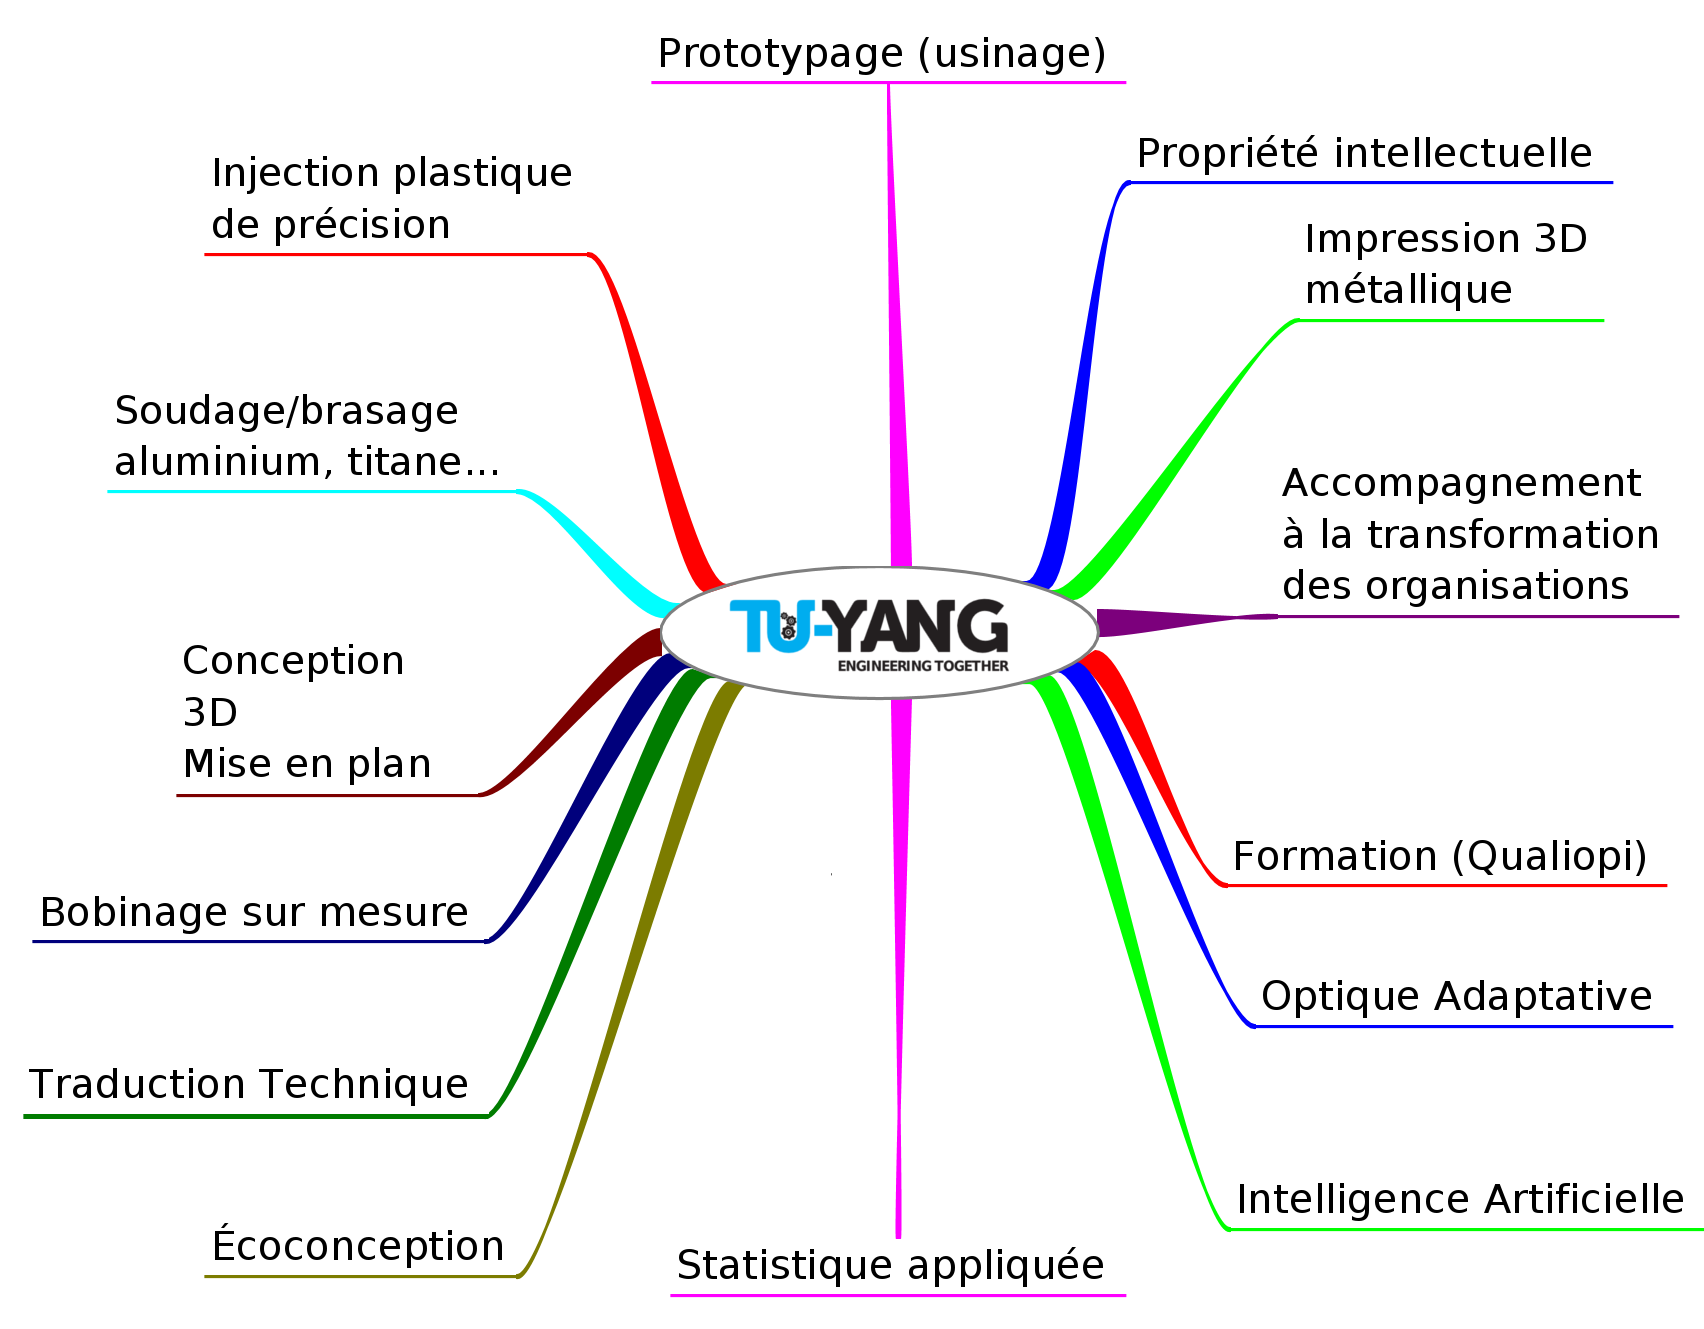 Tu-Yang Network